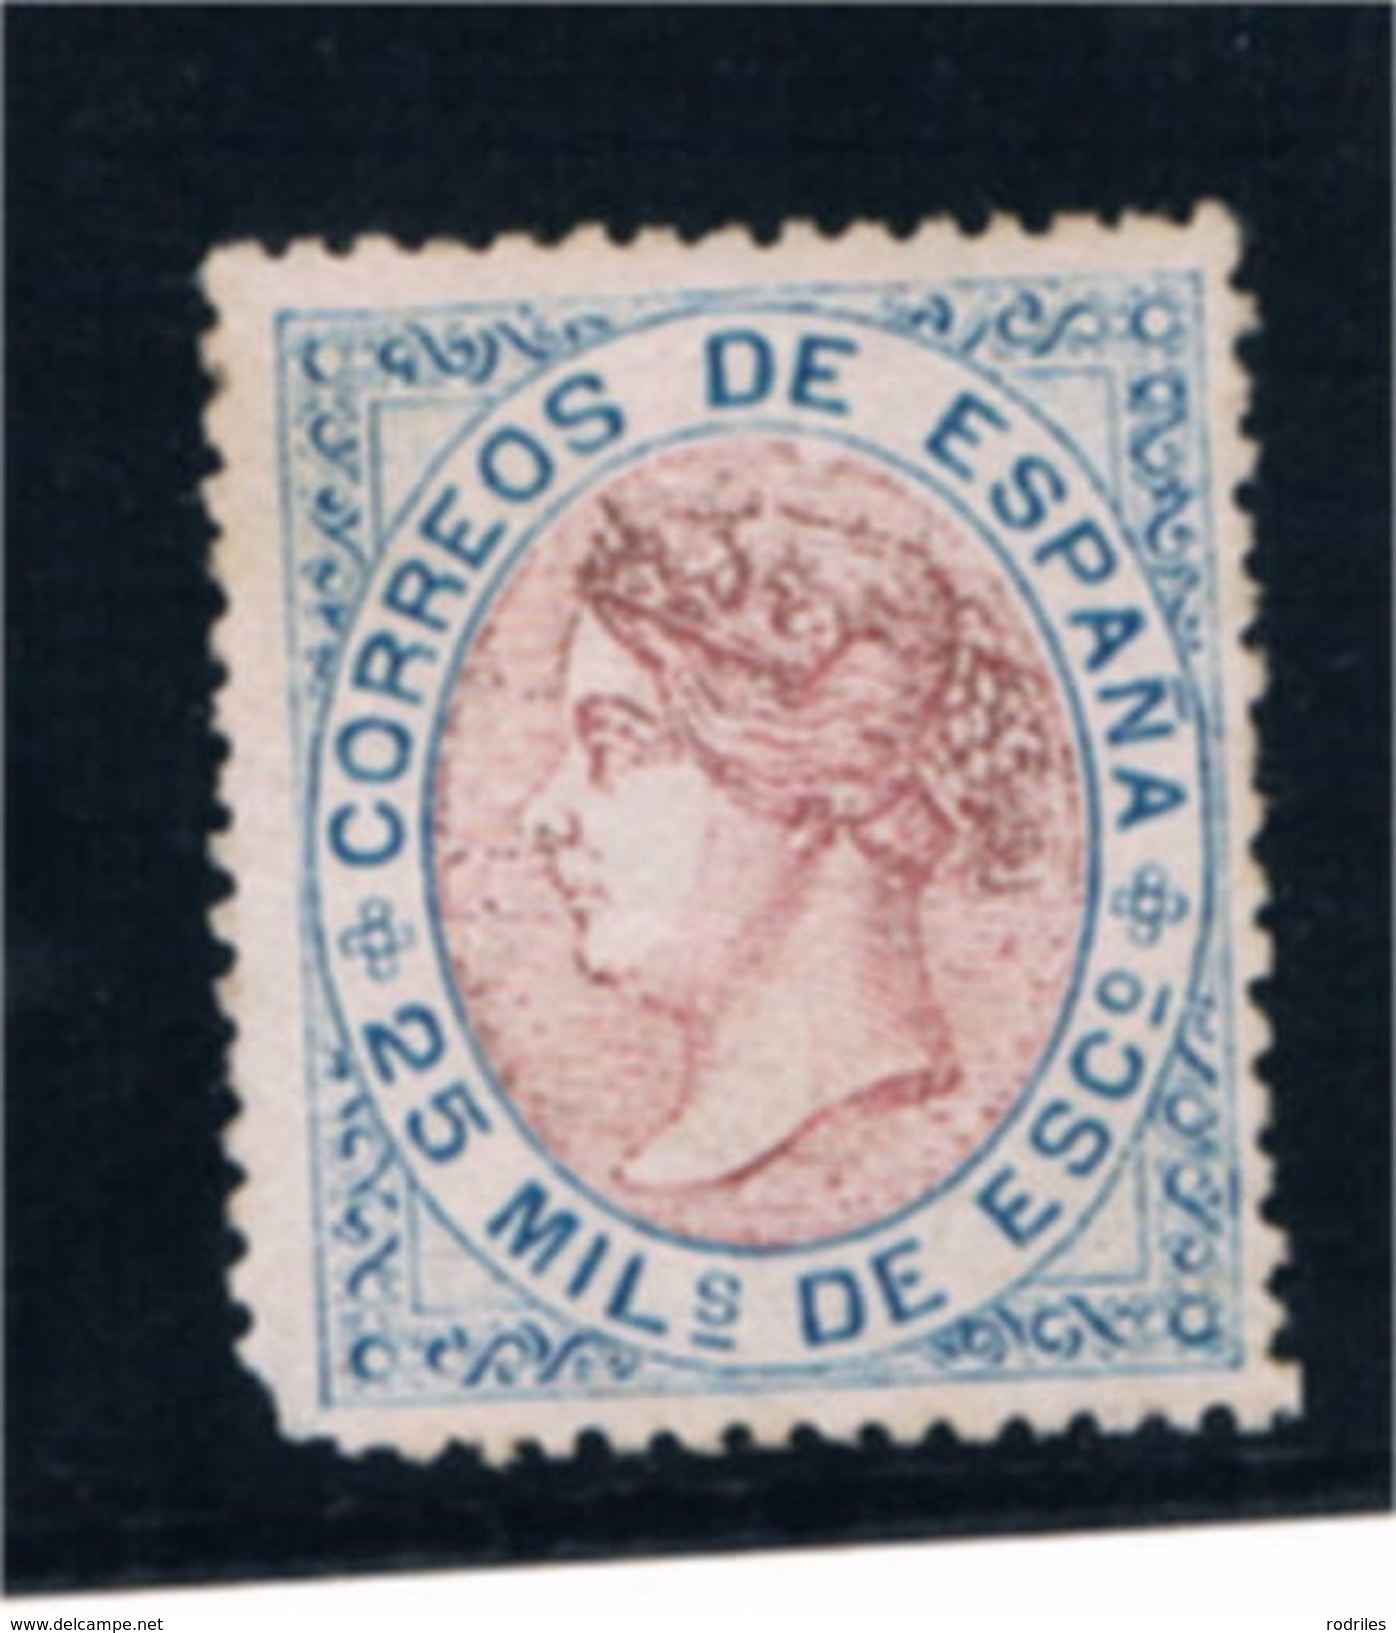 España. Sello Nuevo Del Valor 25 Mil De Isabel II. Nº De Catalogo 95* - Unused Stamps